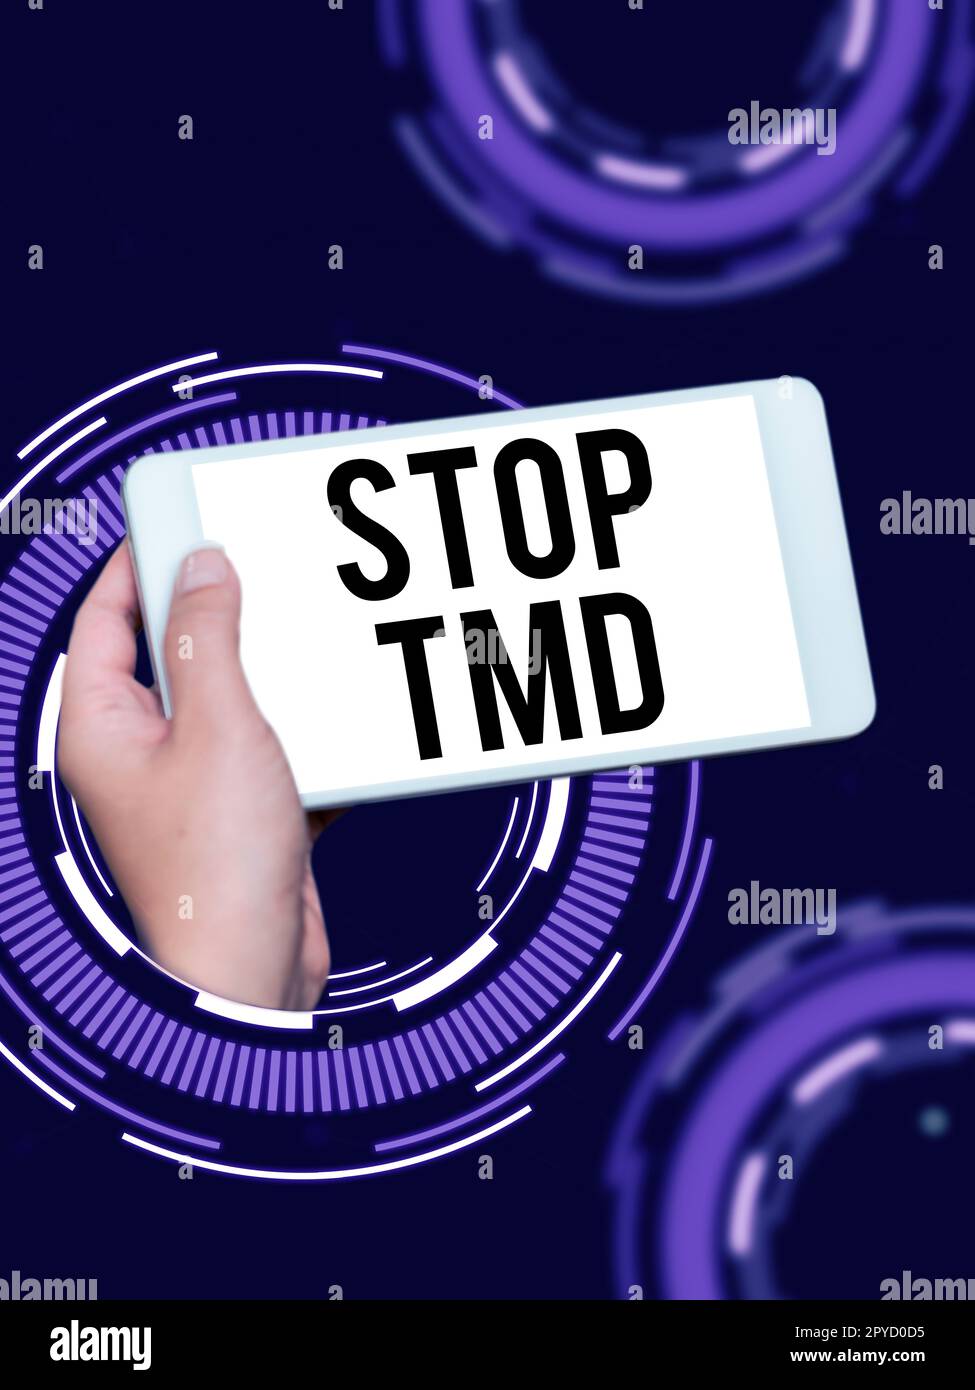 Textzeichen mit „Stop TMD“ (TMD stoppen). Geschäftskonzept verhindern die Störung oder das Problem, das die Kaumuskulatur betrifft Stockfoto